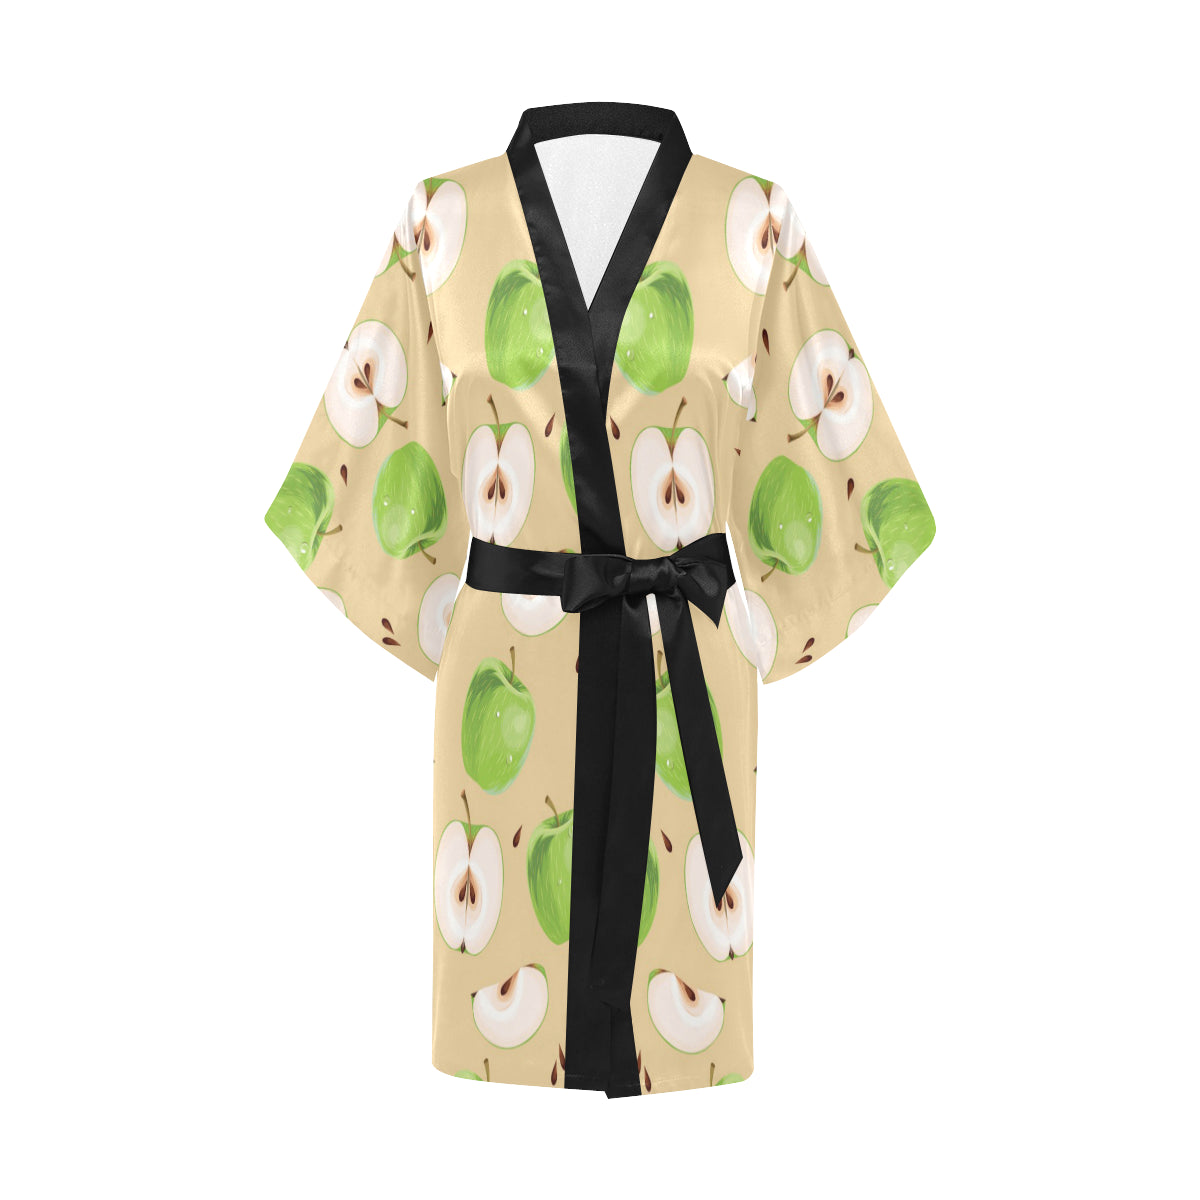 Apple Pattern Print Design AP07 Women Kimono Robe